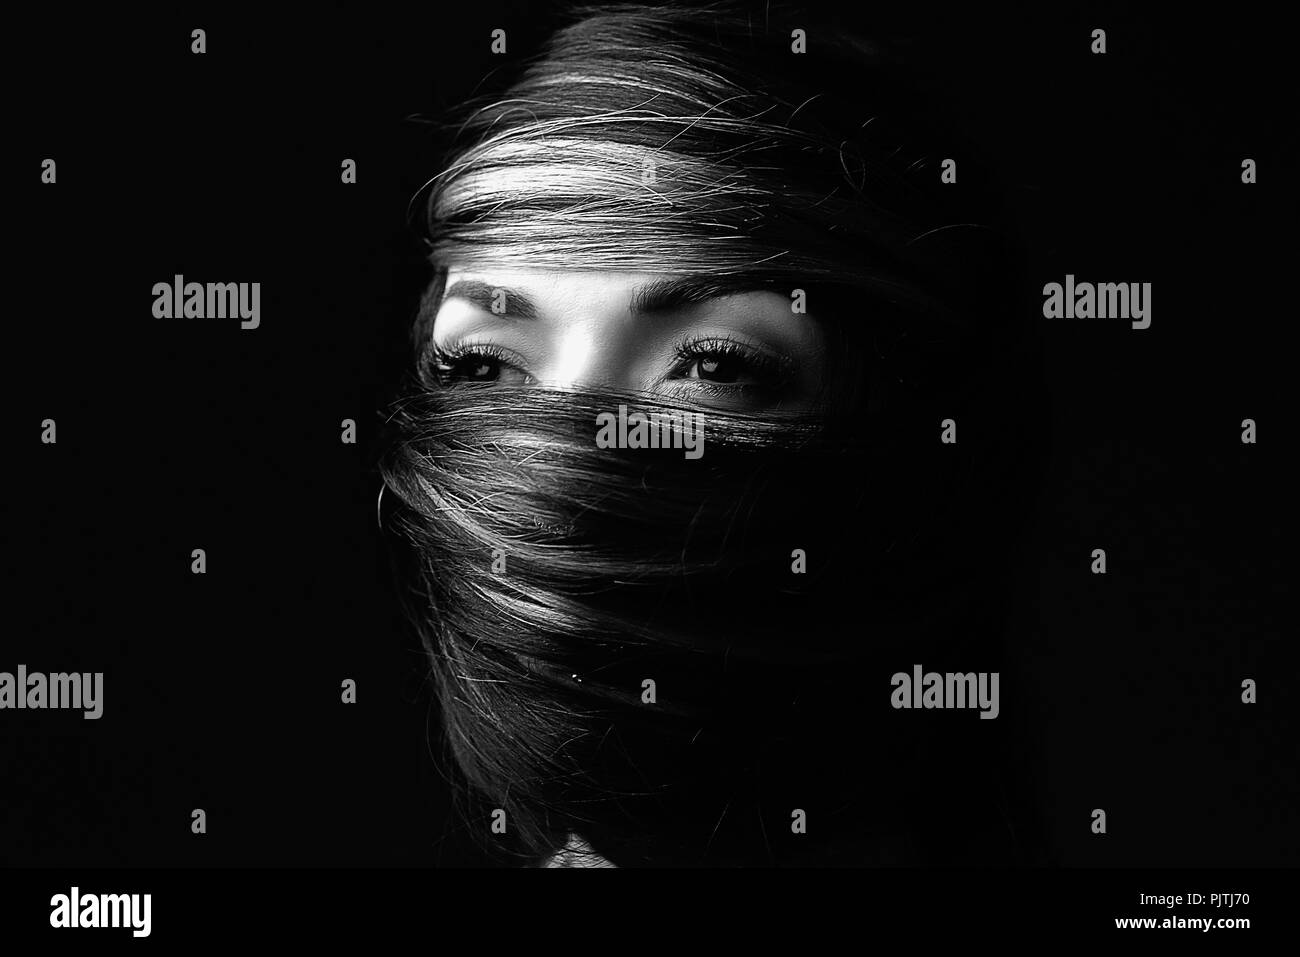 Ritratto di un volto di donna avvolta nel suo proprio capelli Foto Stock